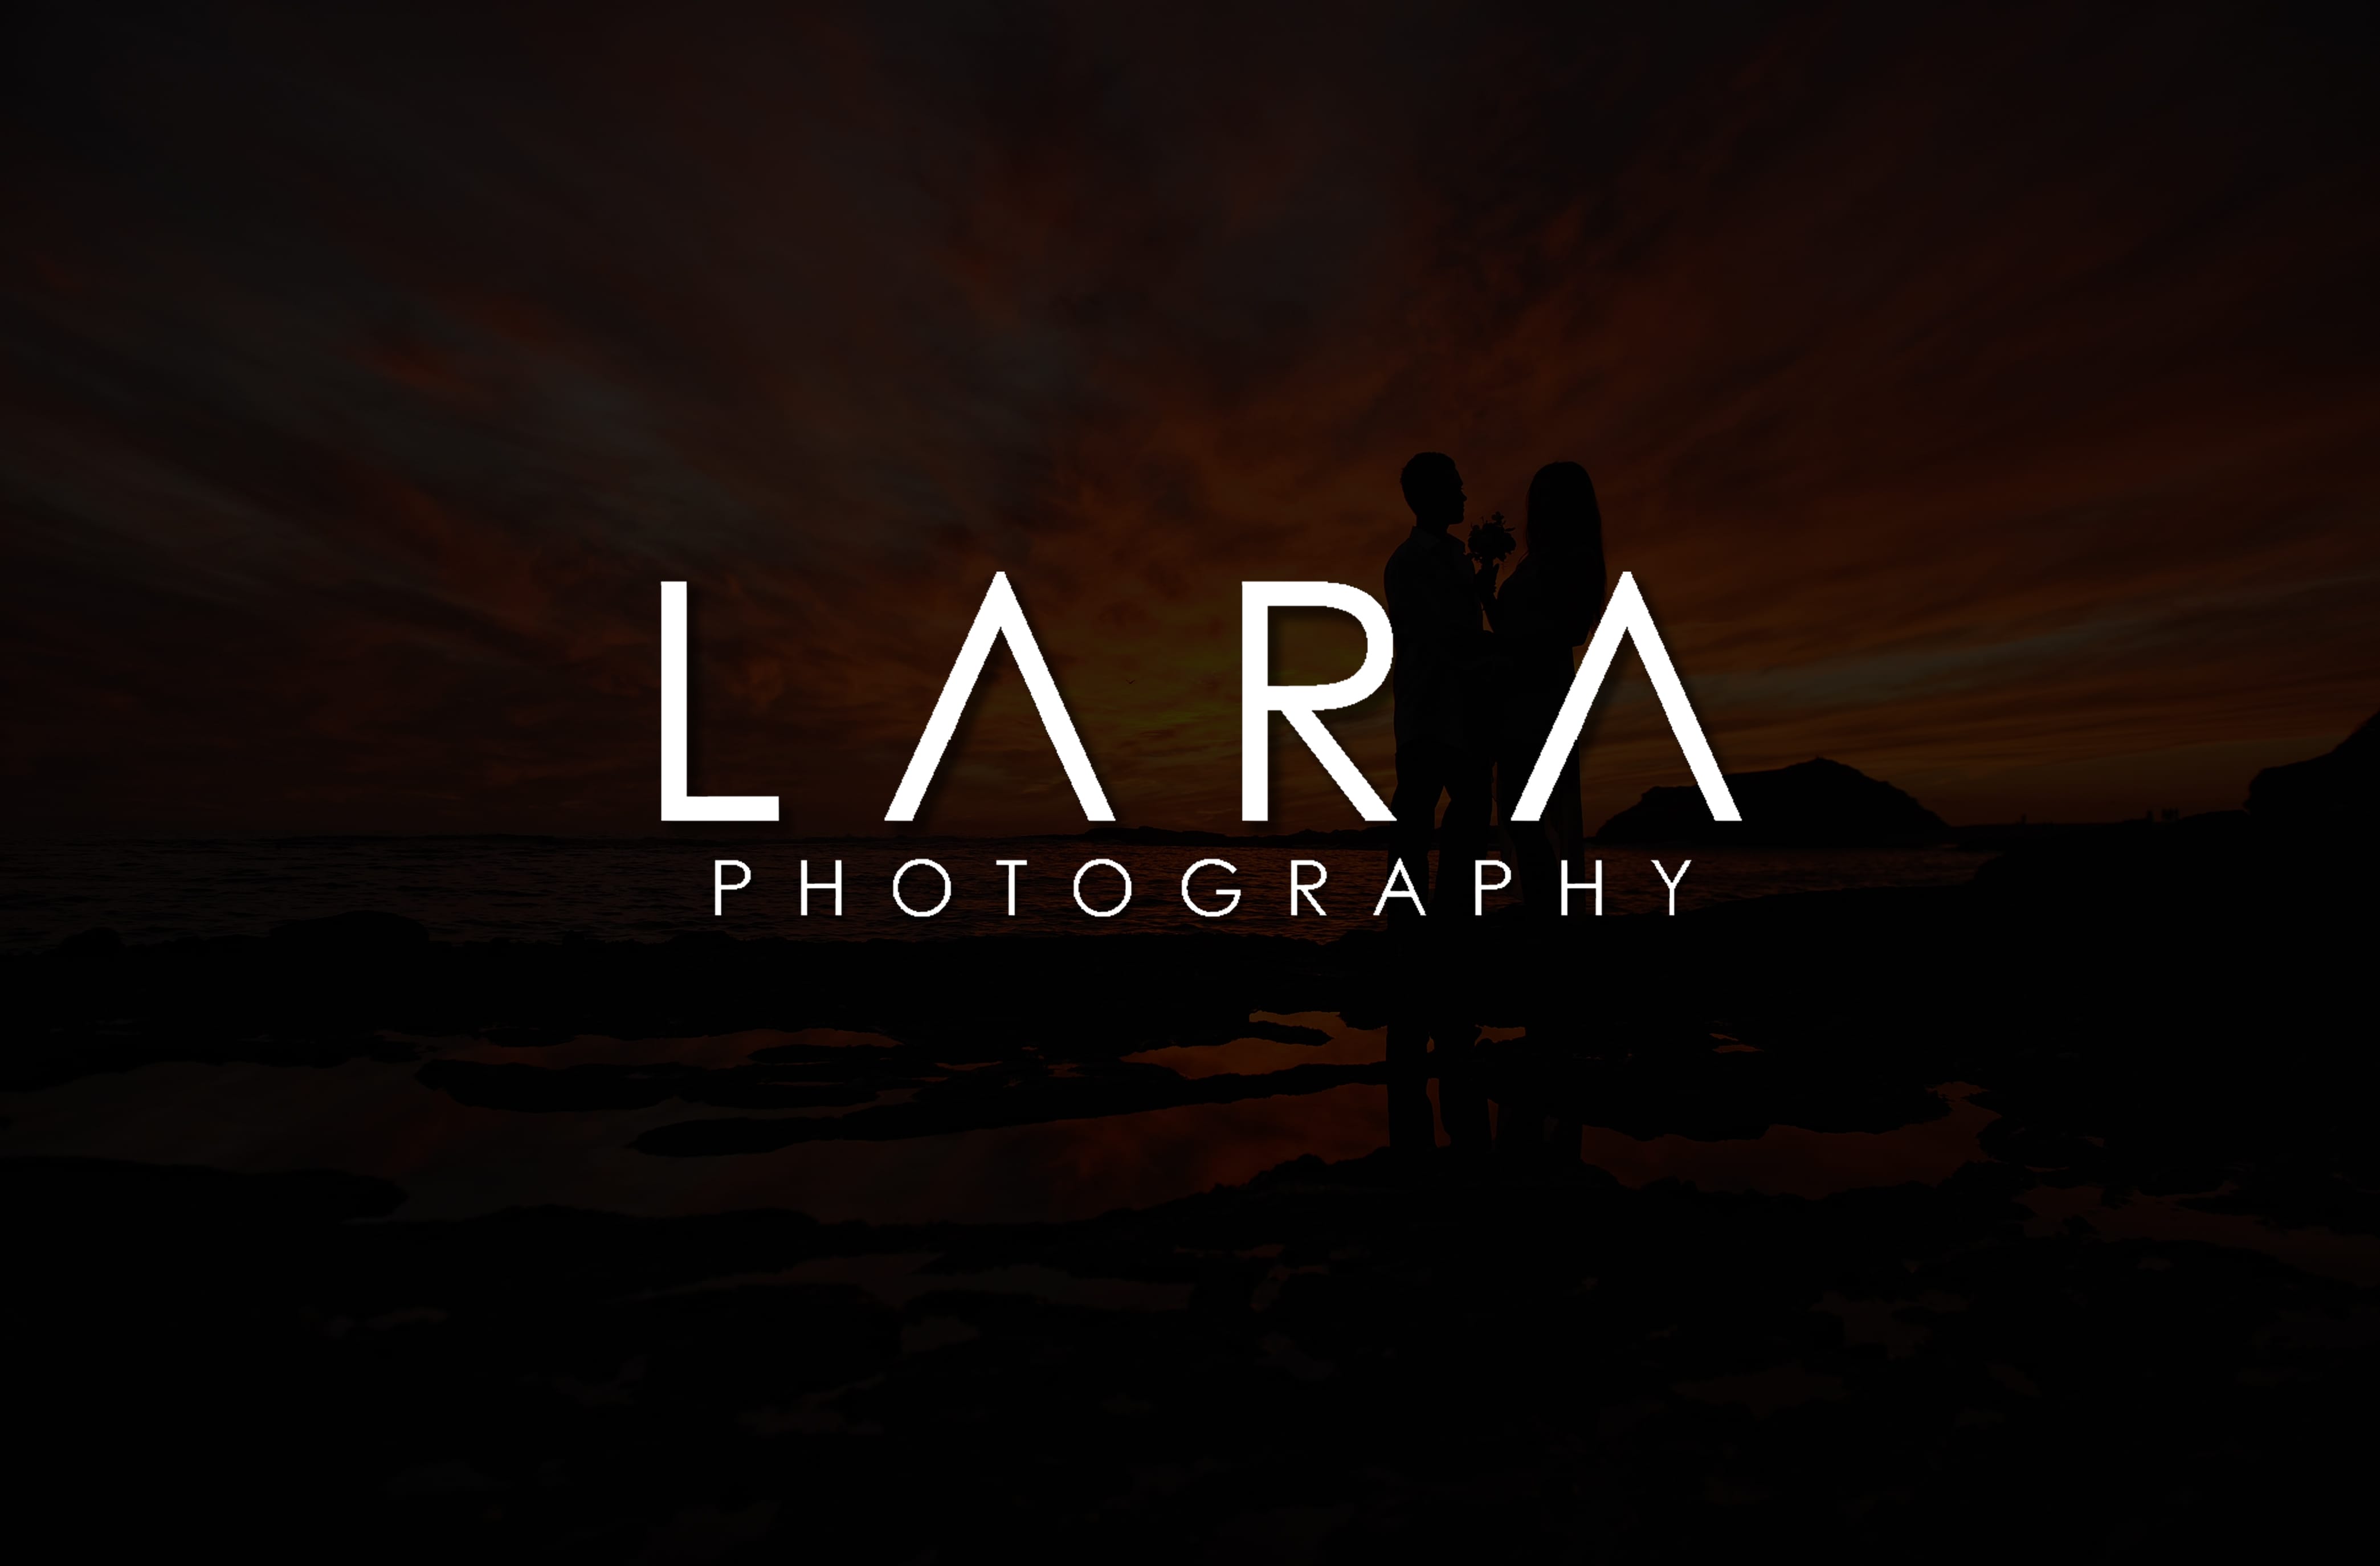 Introducing: Lara Photography